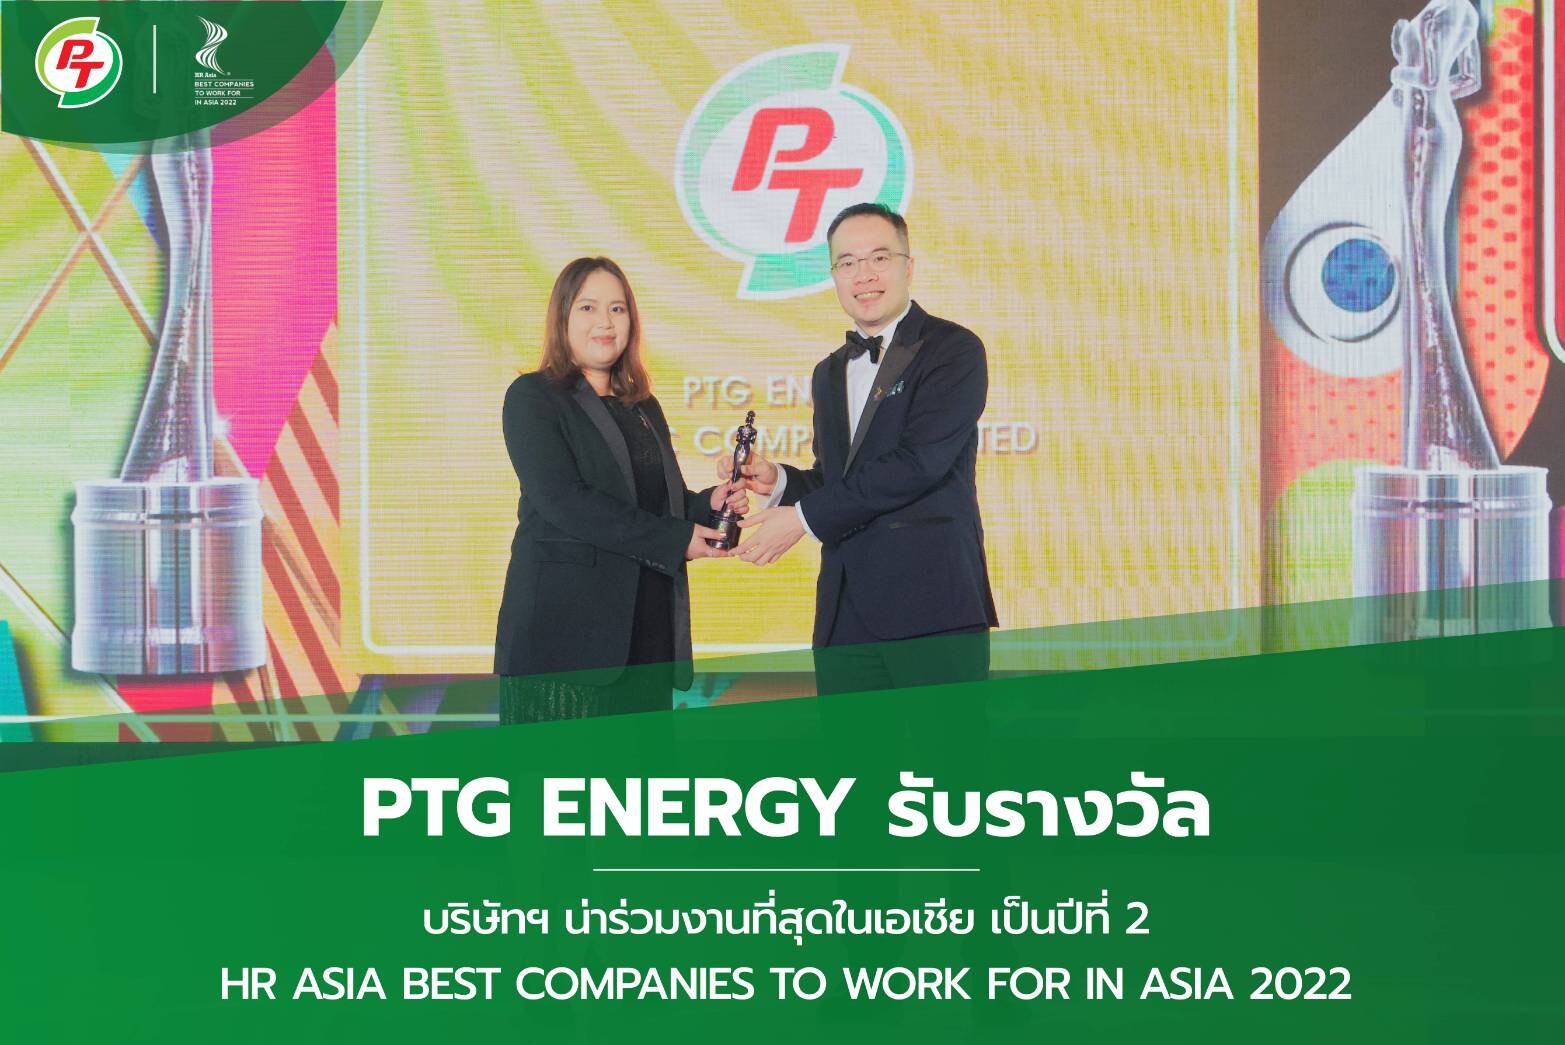 PTG คว้ารางวัลระดับสากล "องค์กรที่น่าทำงานด้วยมากที่สุดในเอเชีย" จาก HR Asia 2 ปีซ้อน